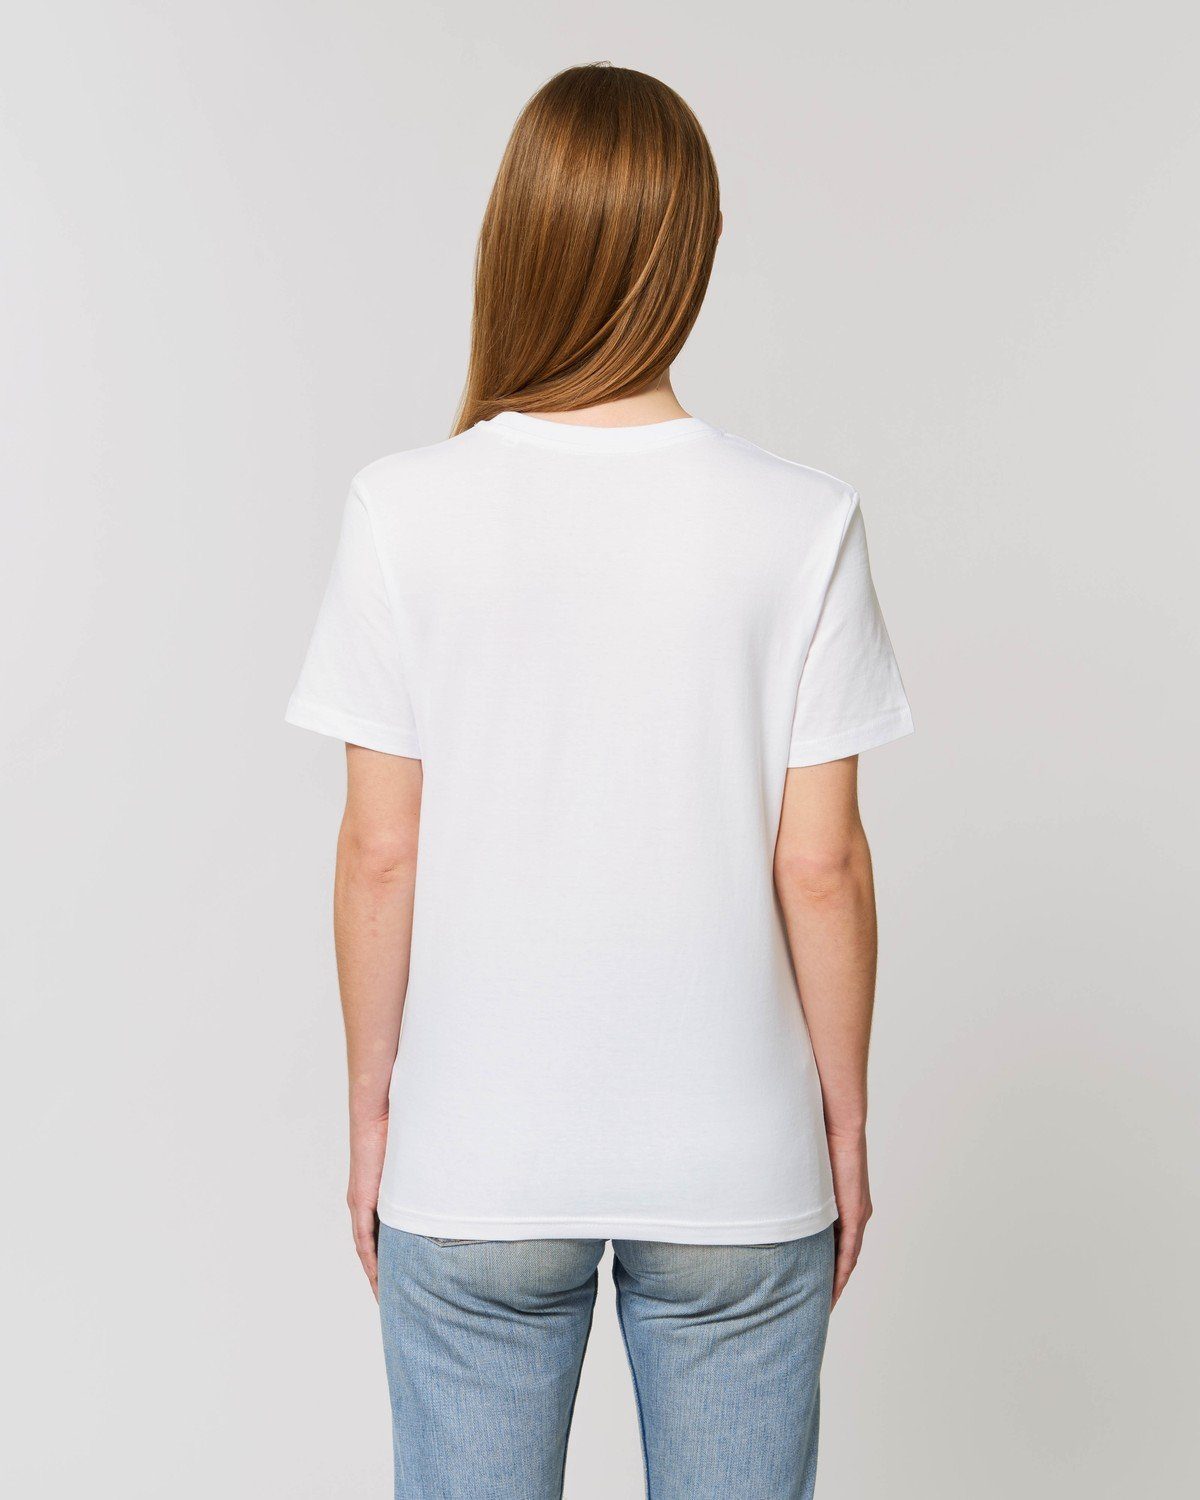 Hochwertiges 100% T-Shirt Bio-Baumwolle Unisex aus White T-Shirt Hilltop